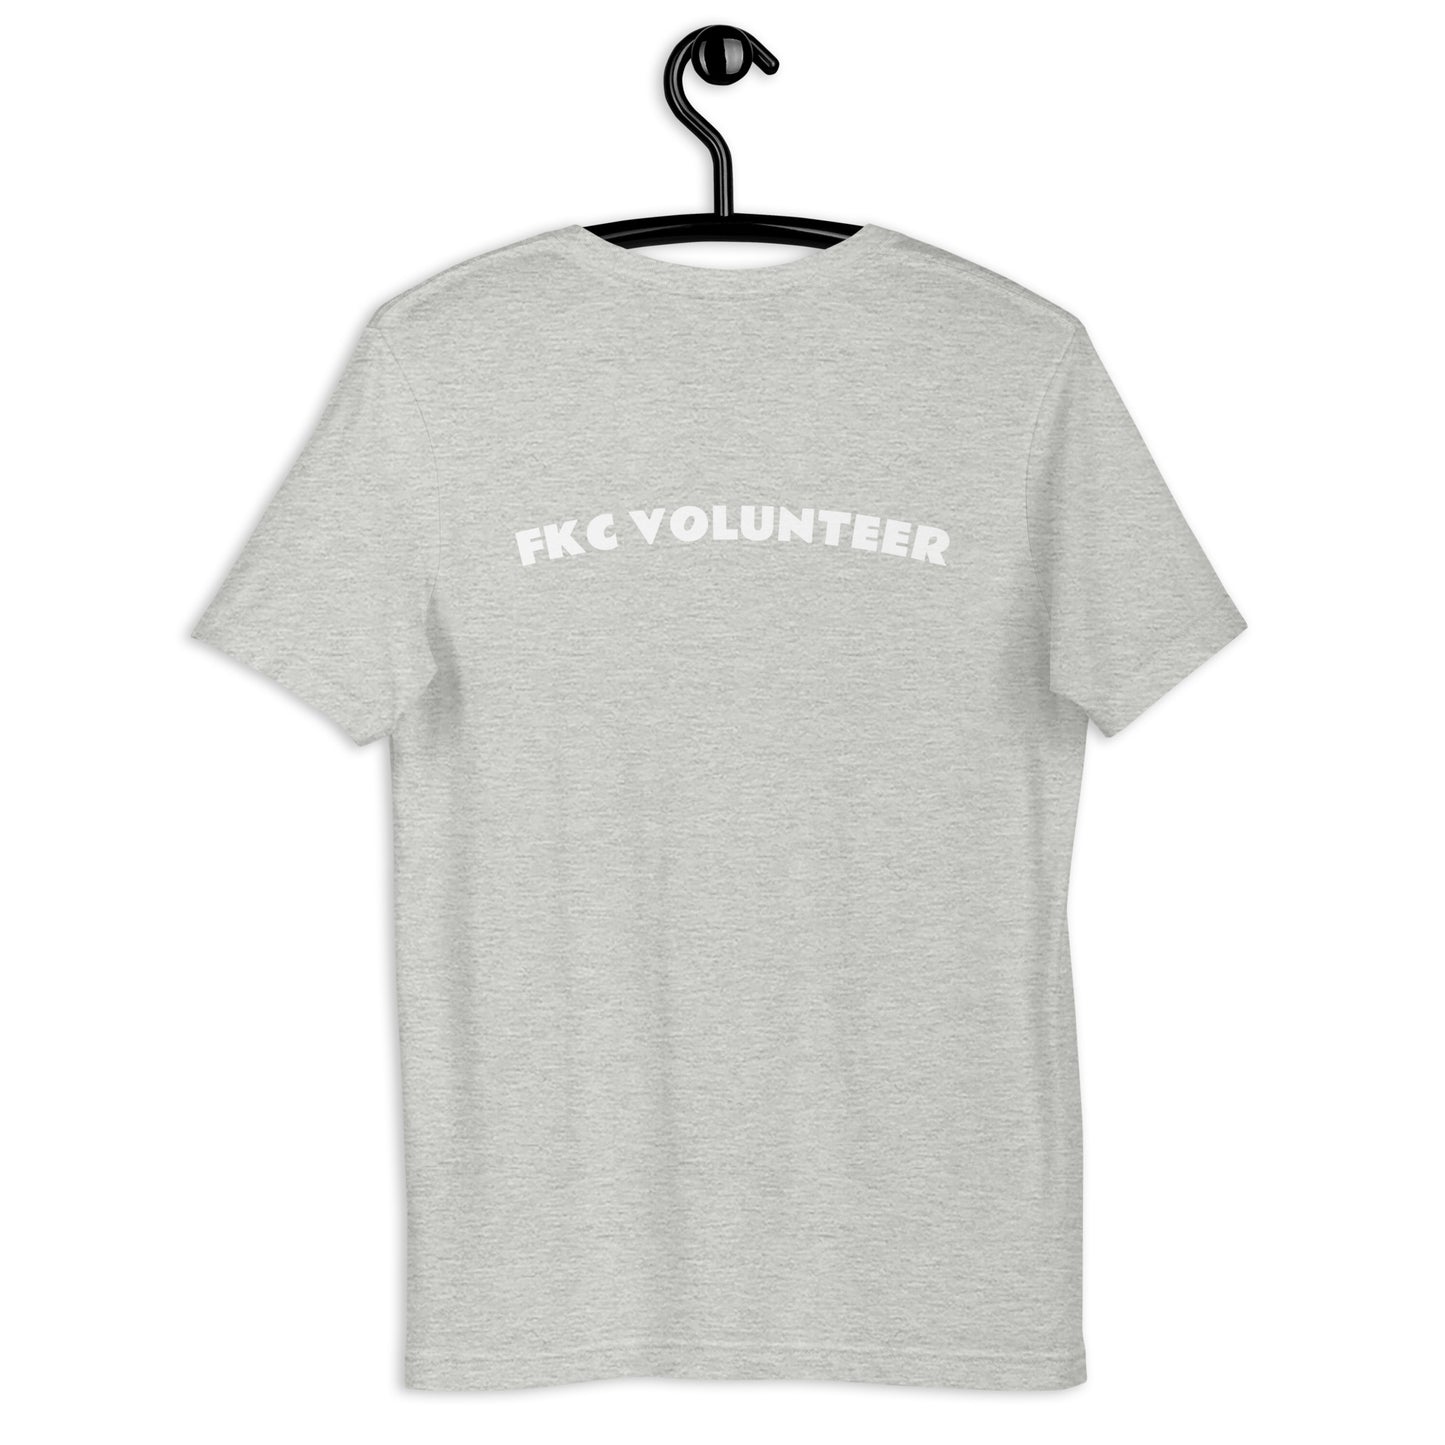 FKC volunteer - Unisex t-shirt